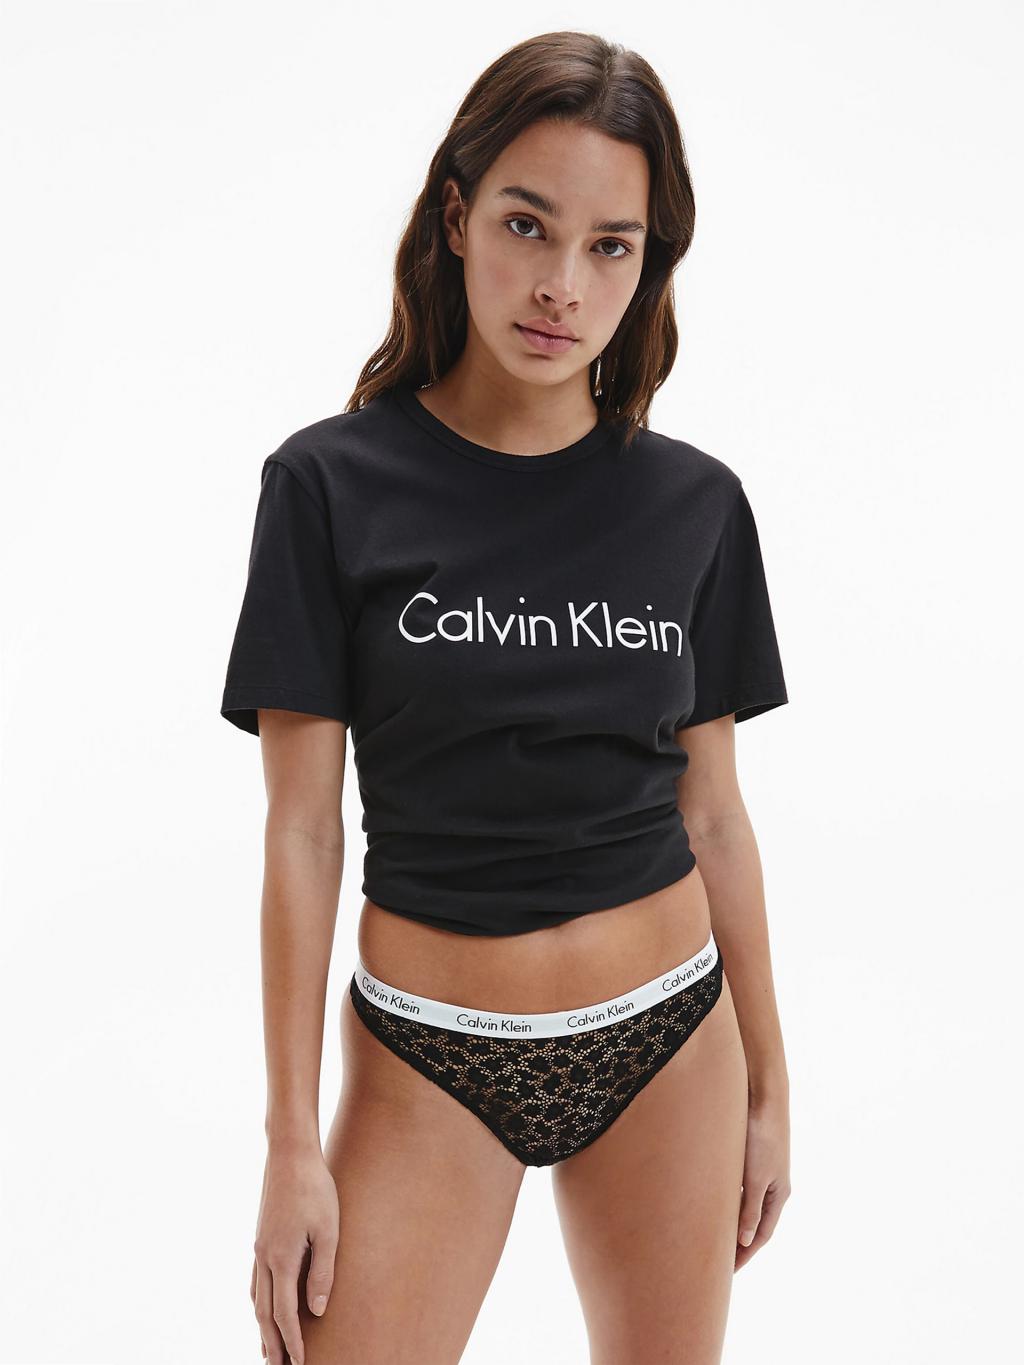 QD3859 - brazilky Calvin Klein